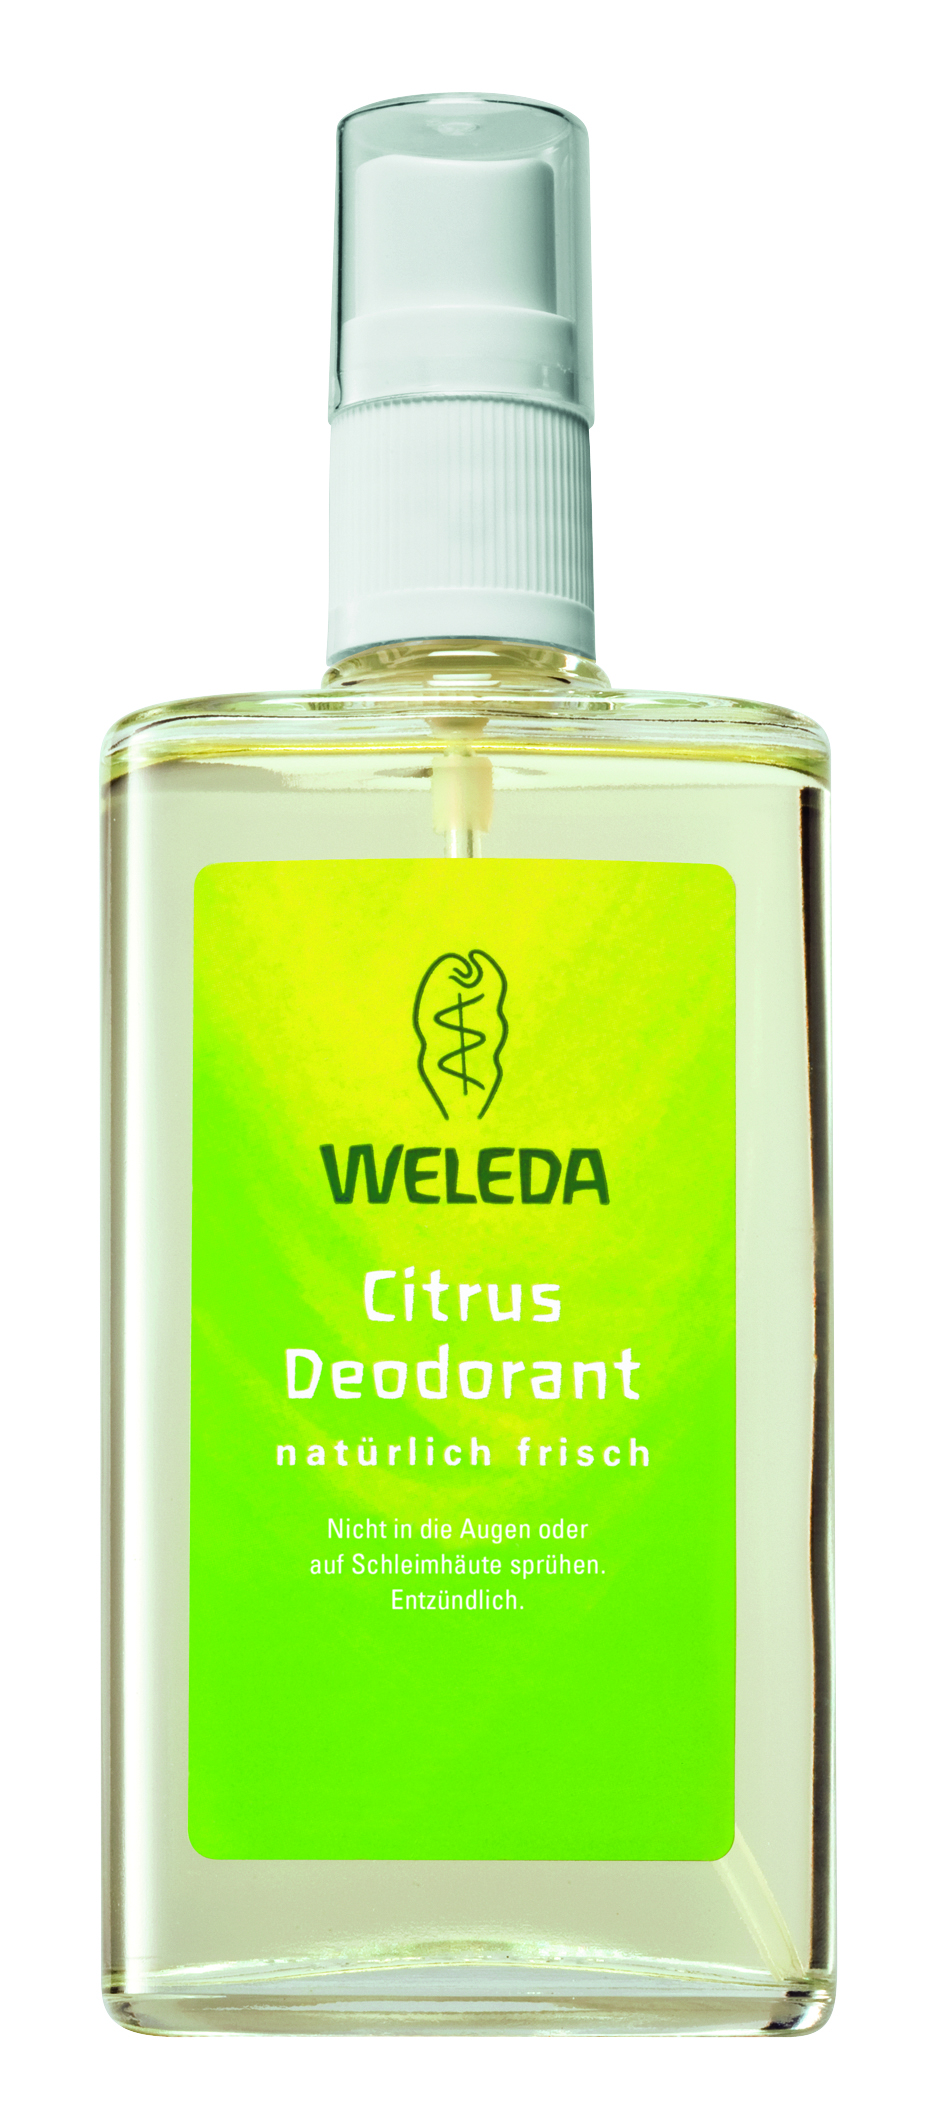 Citrus Deodorant, 100 ml